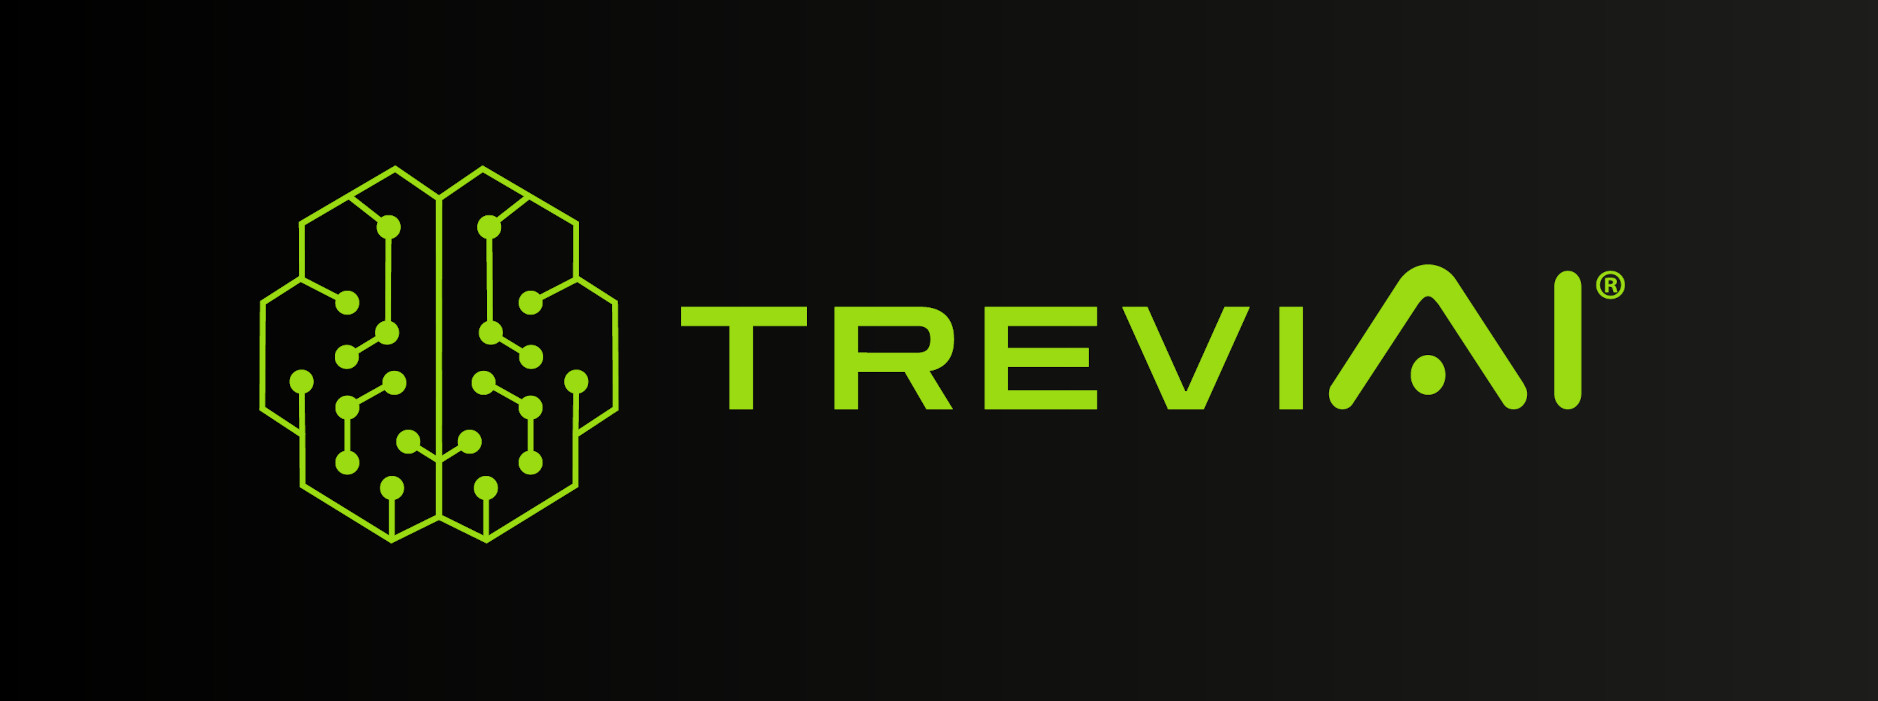 TreviAI GmbH kündigt neue Internetpräsenz an